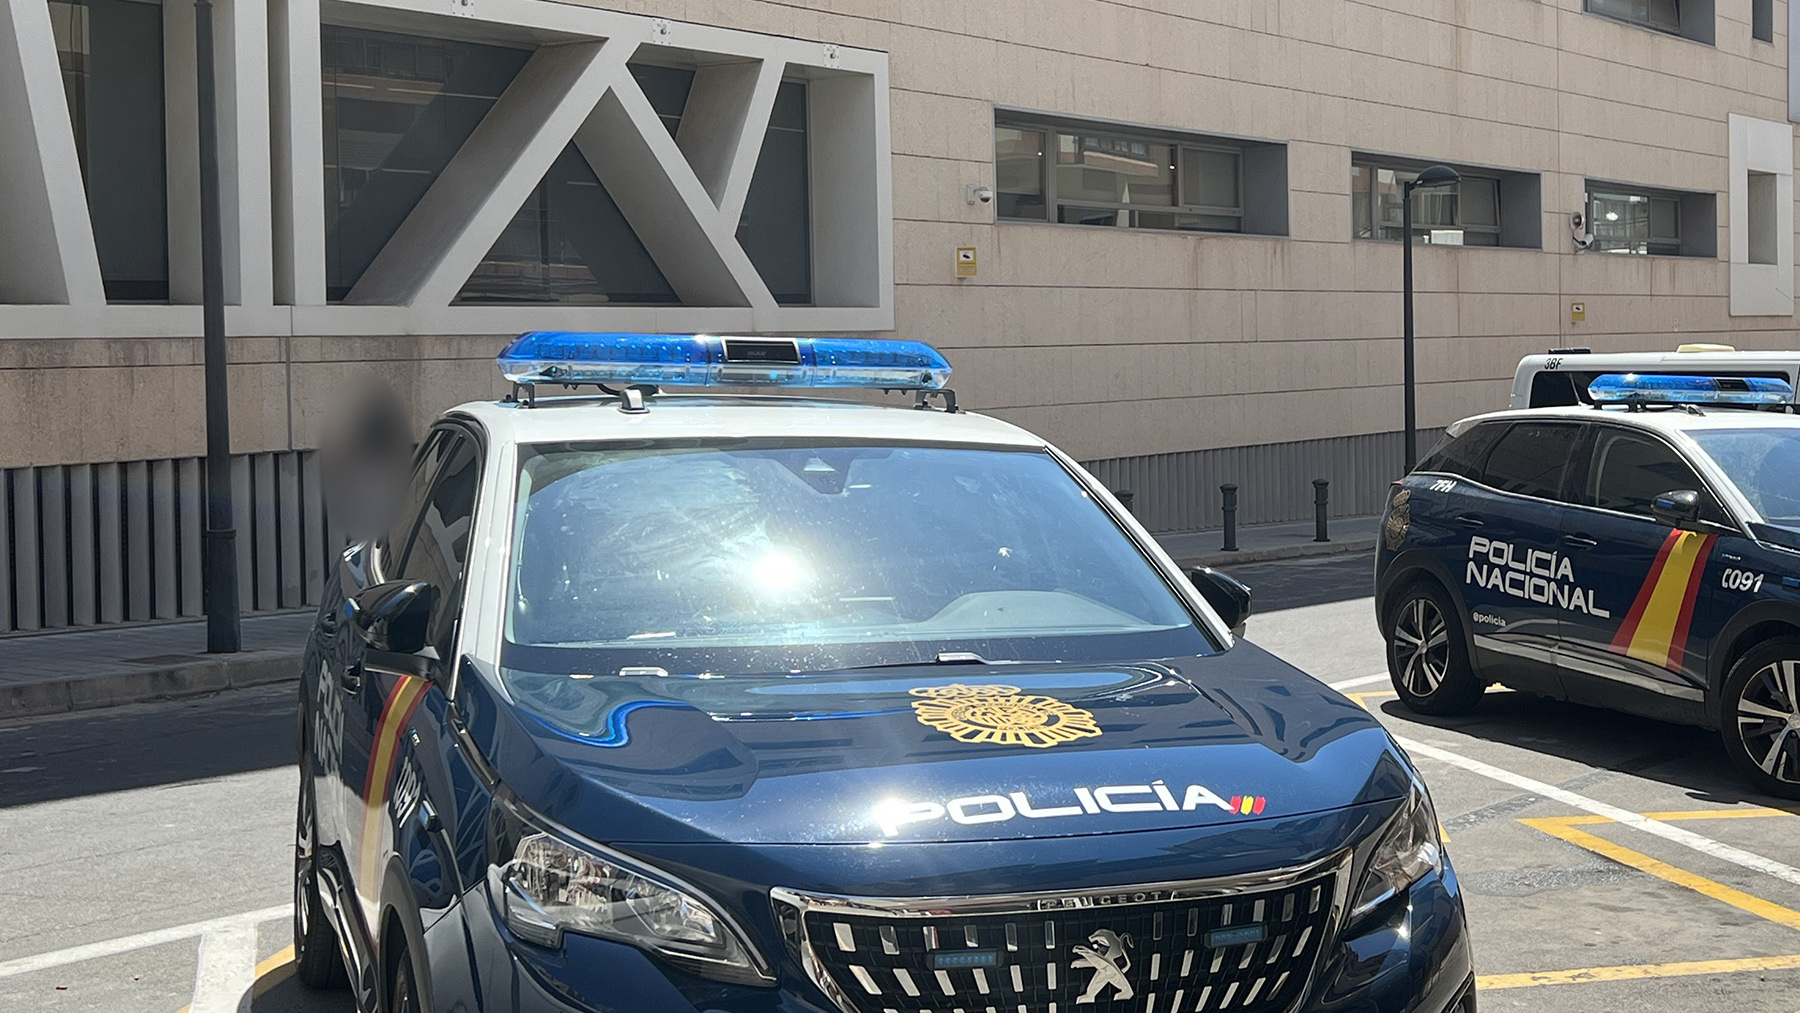 Comisaría de la Policía Nacional en Alicante.